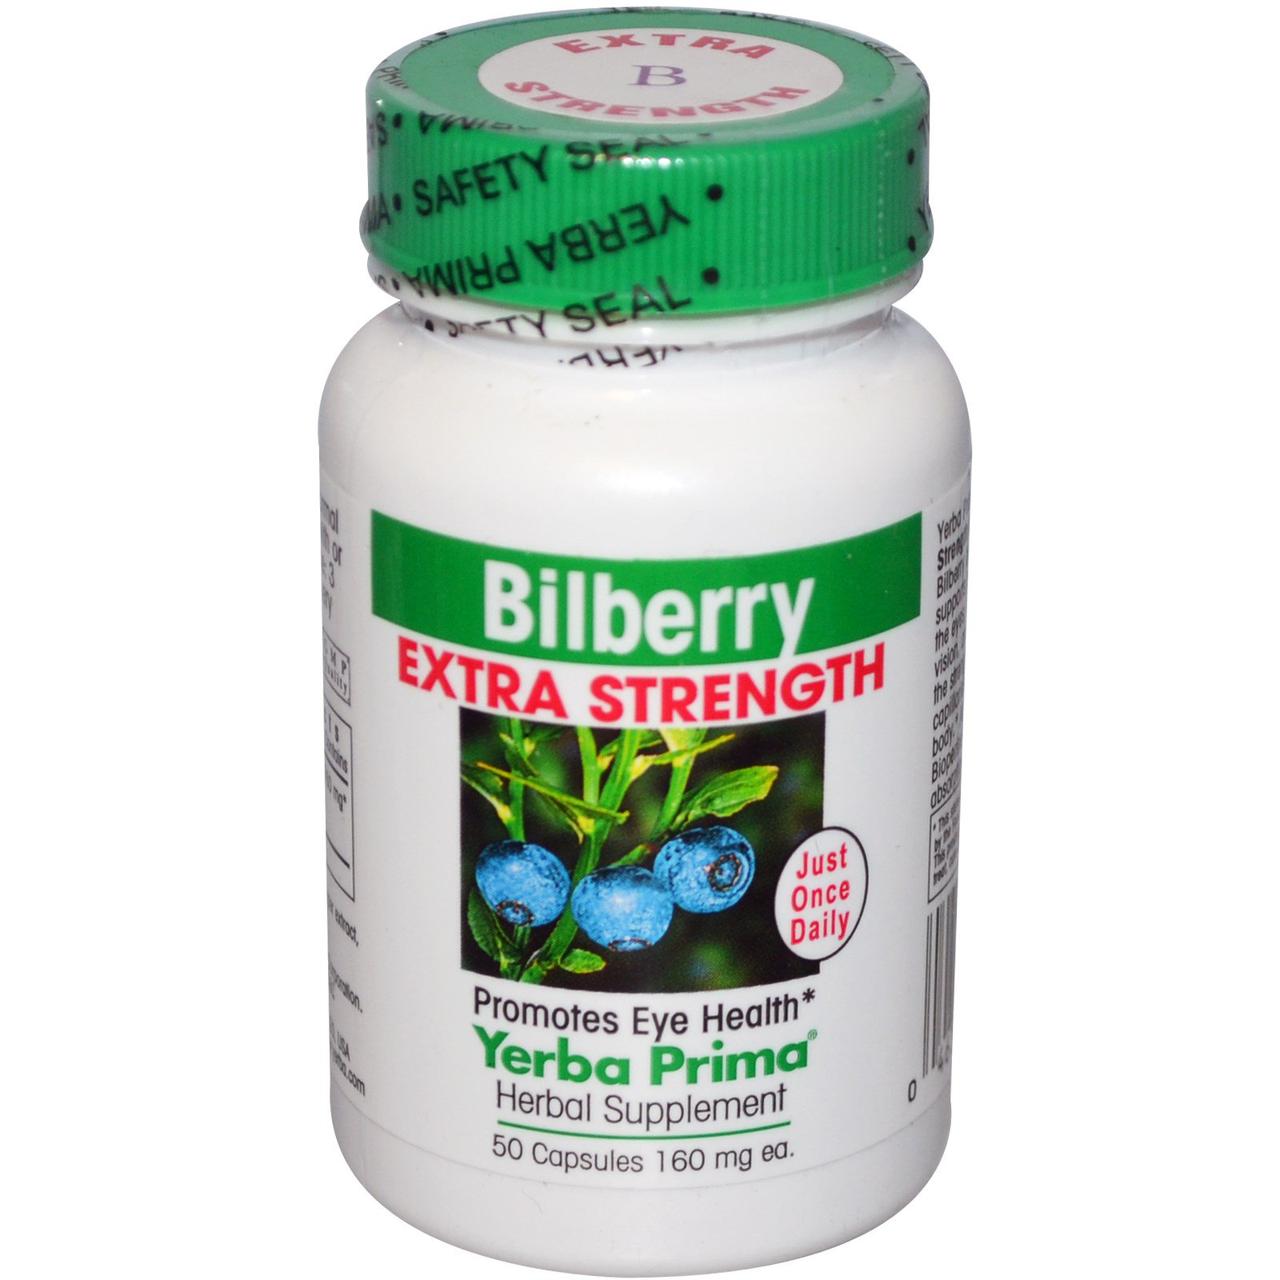 Чорниця з підвищеною силою дії (Bilberry Extra Strength), Yerba Prima, 160 мг, 50 капсул